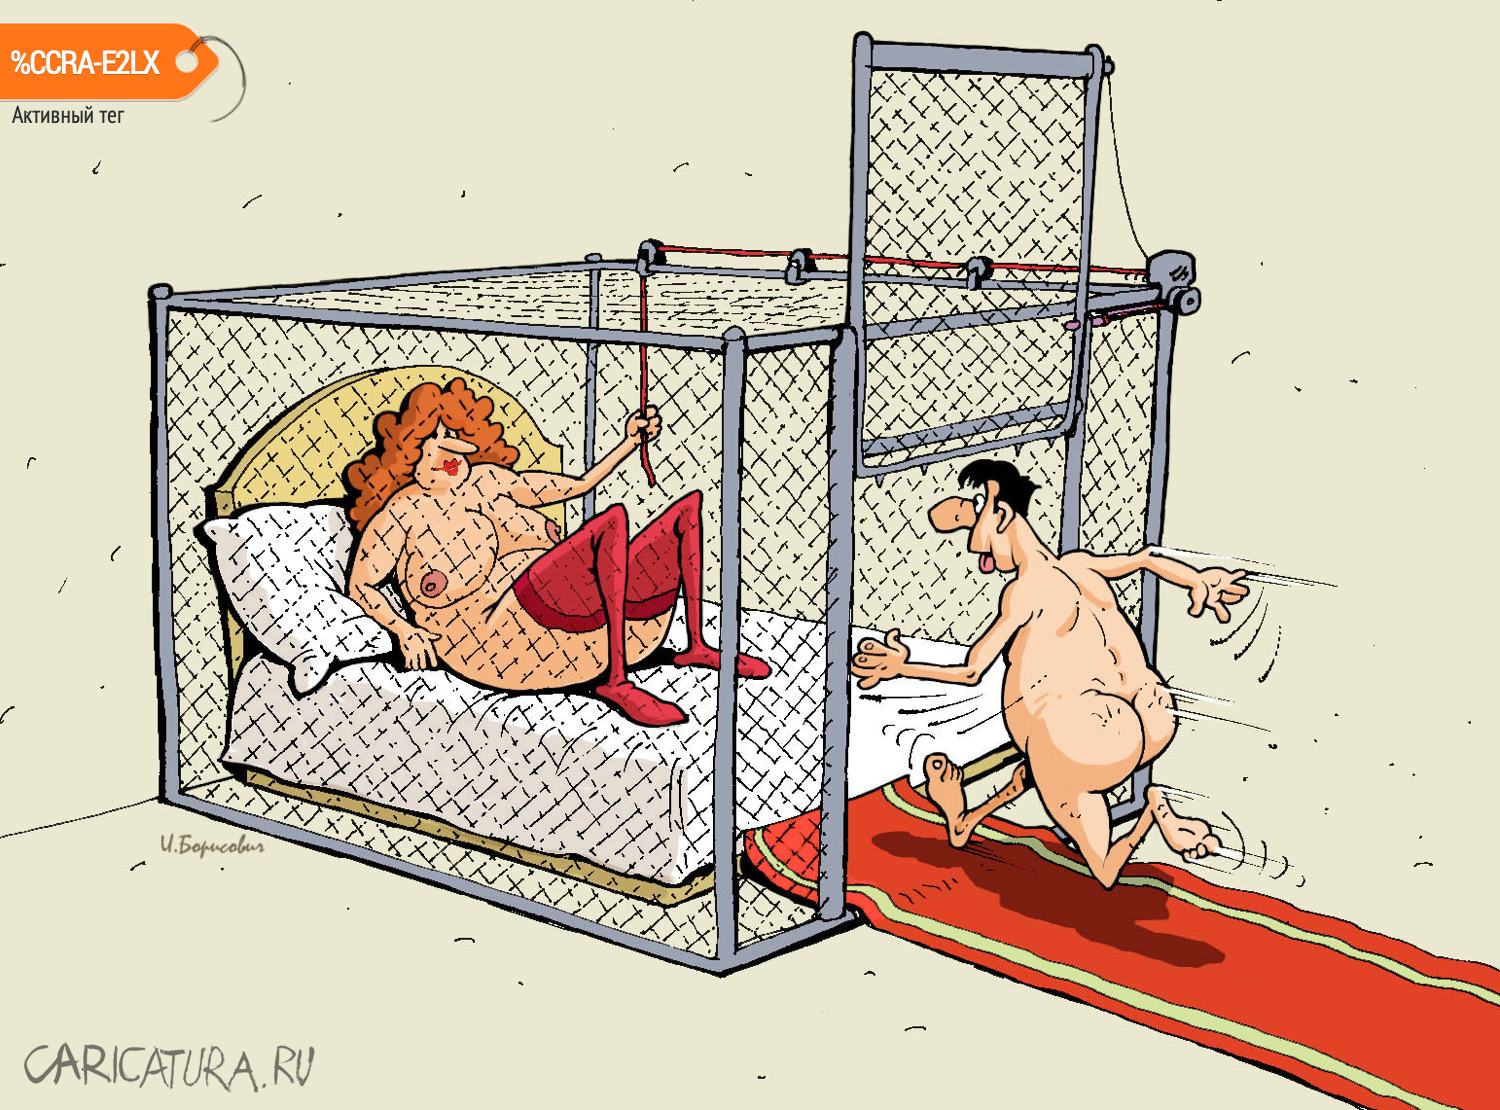 Карикатура "Клетка", Игорь Елистратов